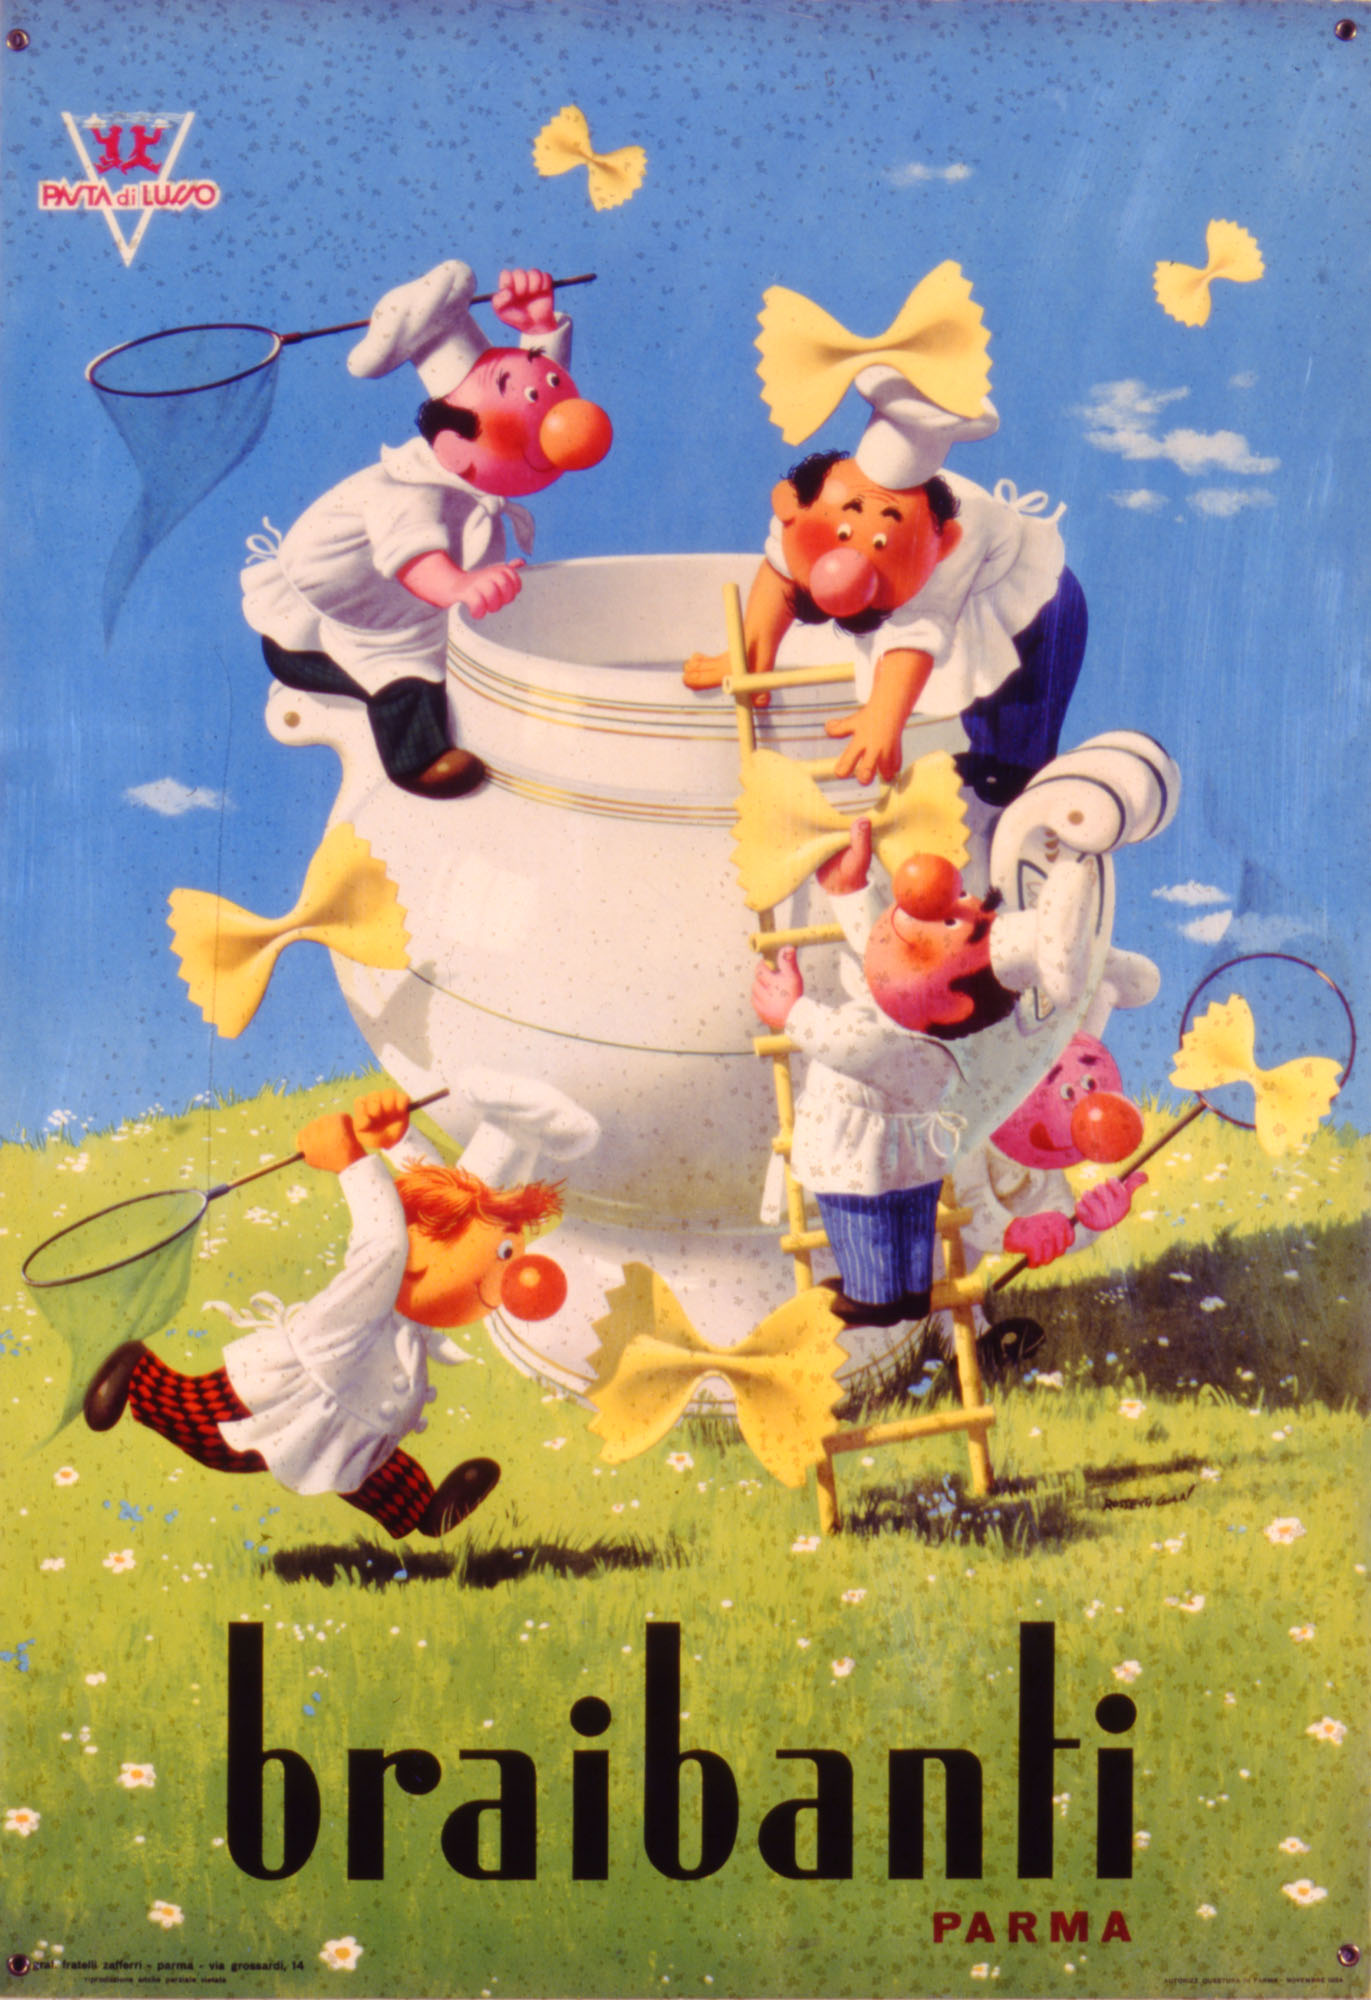 Gian Rossetti, A caccia di farfalle, locandina pubblicitaria Braibanti, 1955